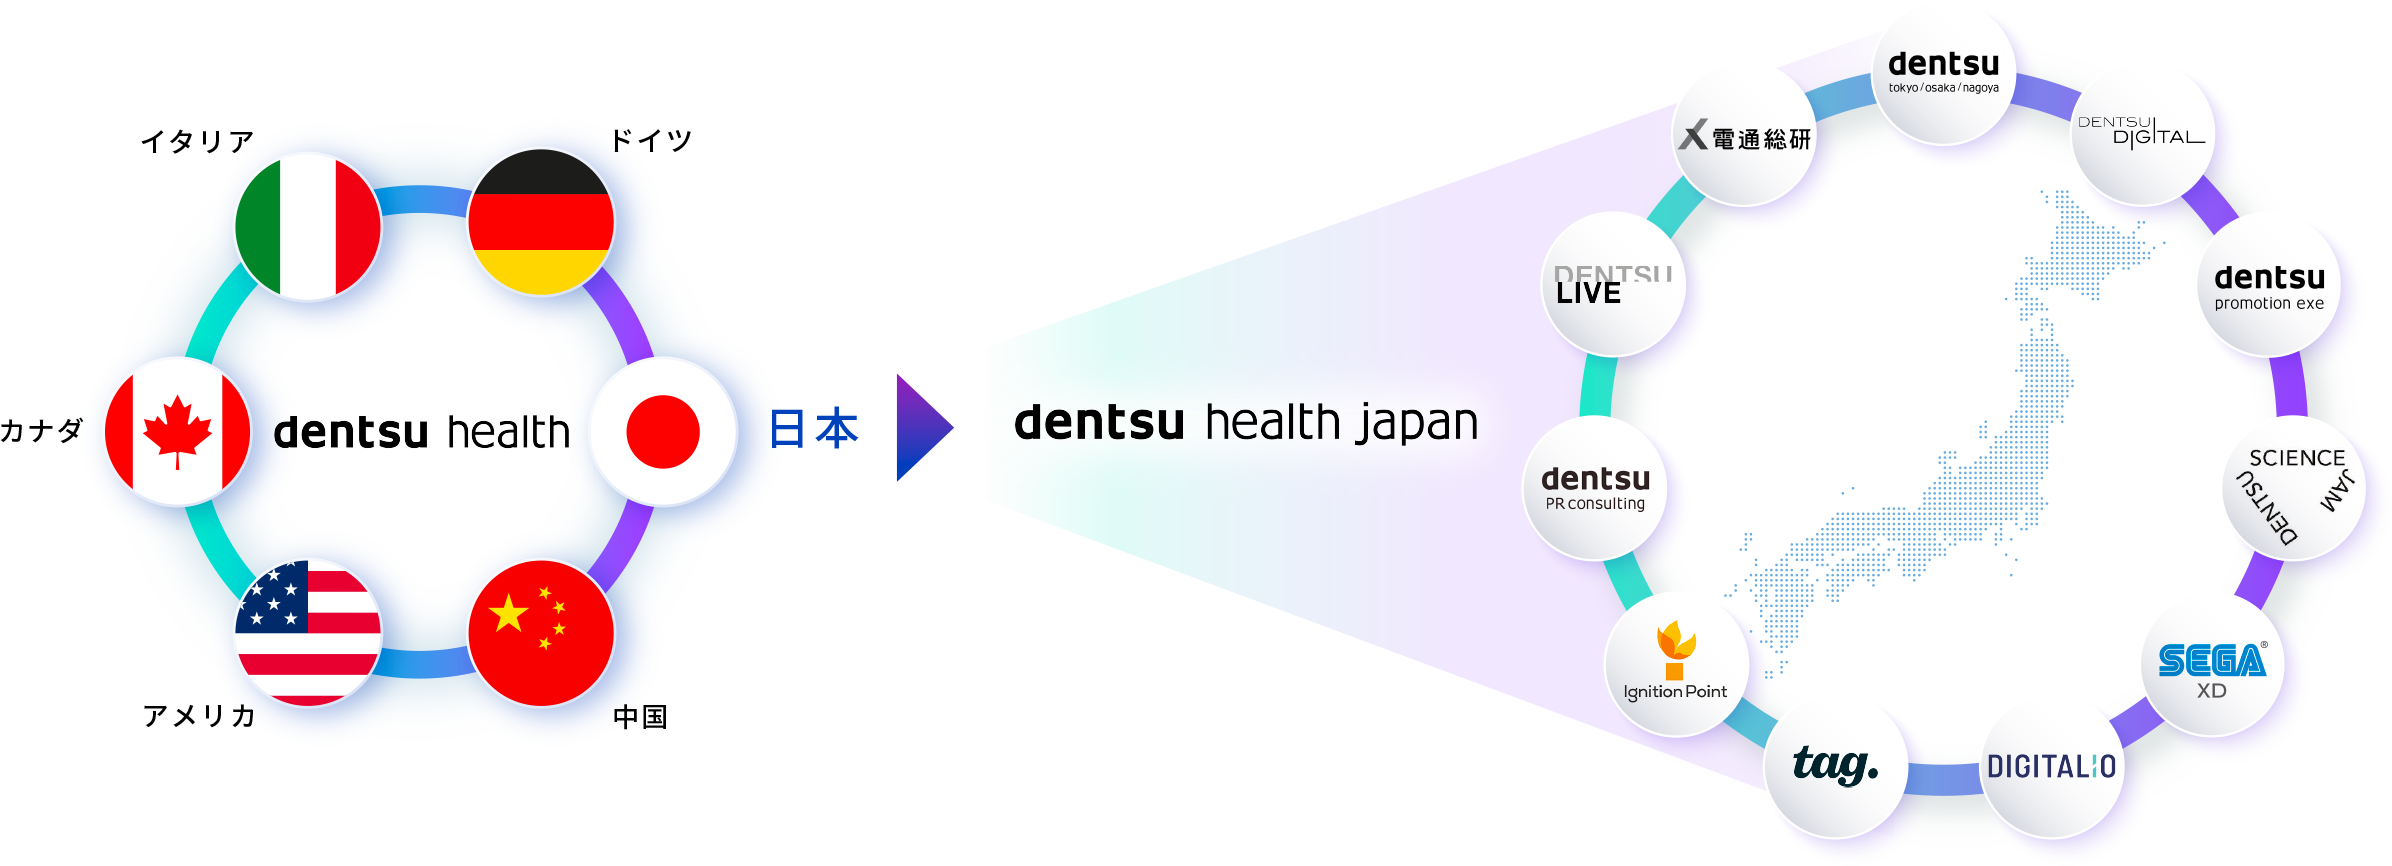 「日本」「アメリカ」「カナダ」「ドイツ」「イタリア」「中国」で構成された電通ヘルスの中で、電通ヘルスジャパンが日本における中核組織であることを表した概念図